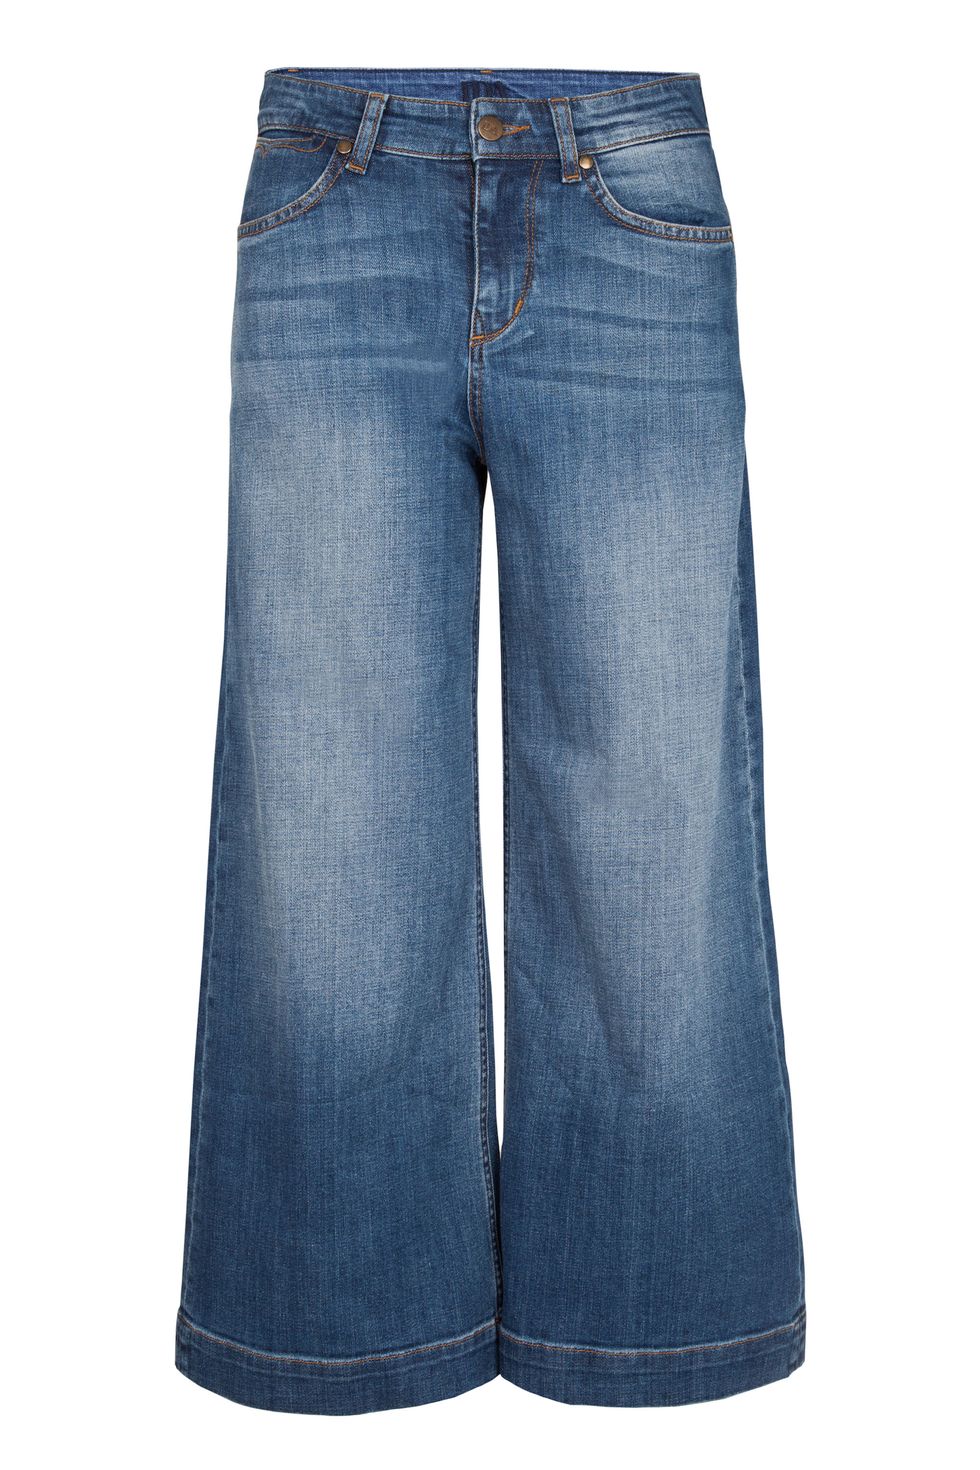 Blue, Product, Pocket, Denim, Jeans, Textile, White, Electric blue, Fashion, Azure, 